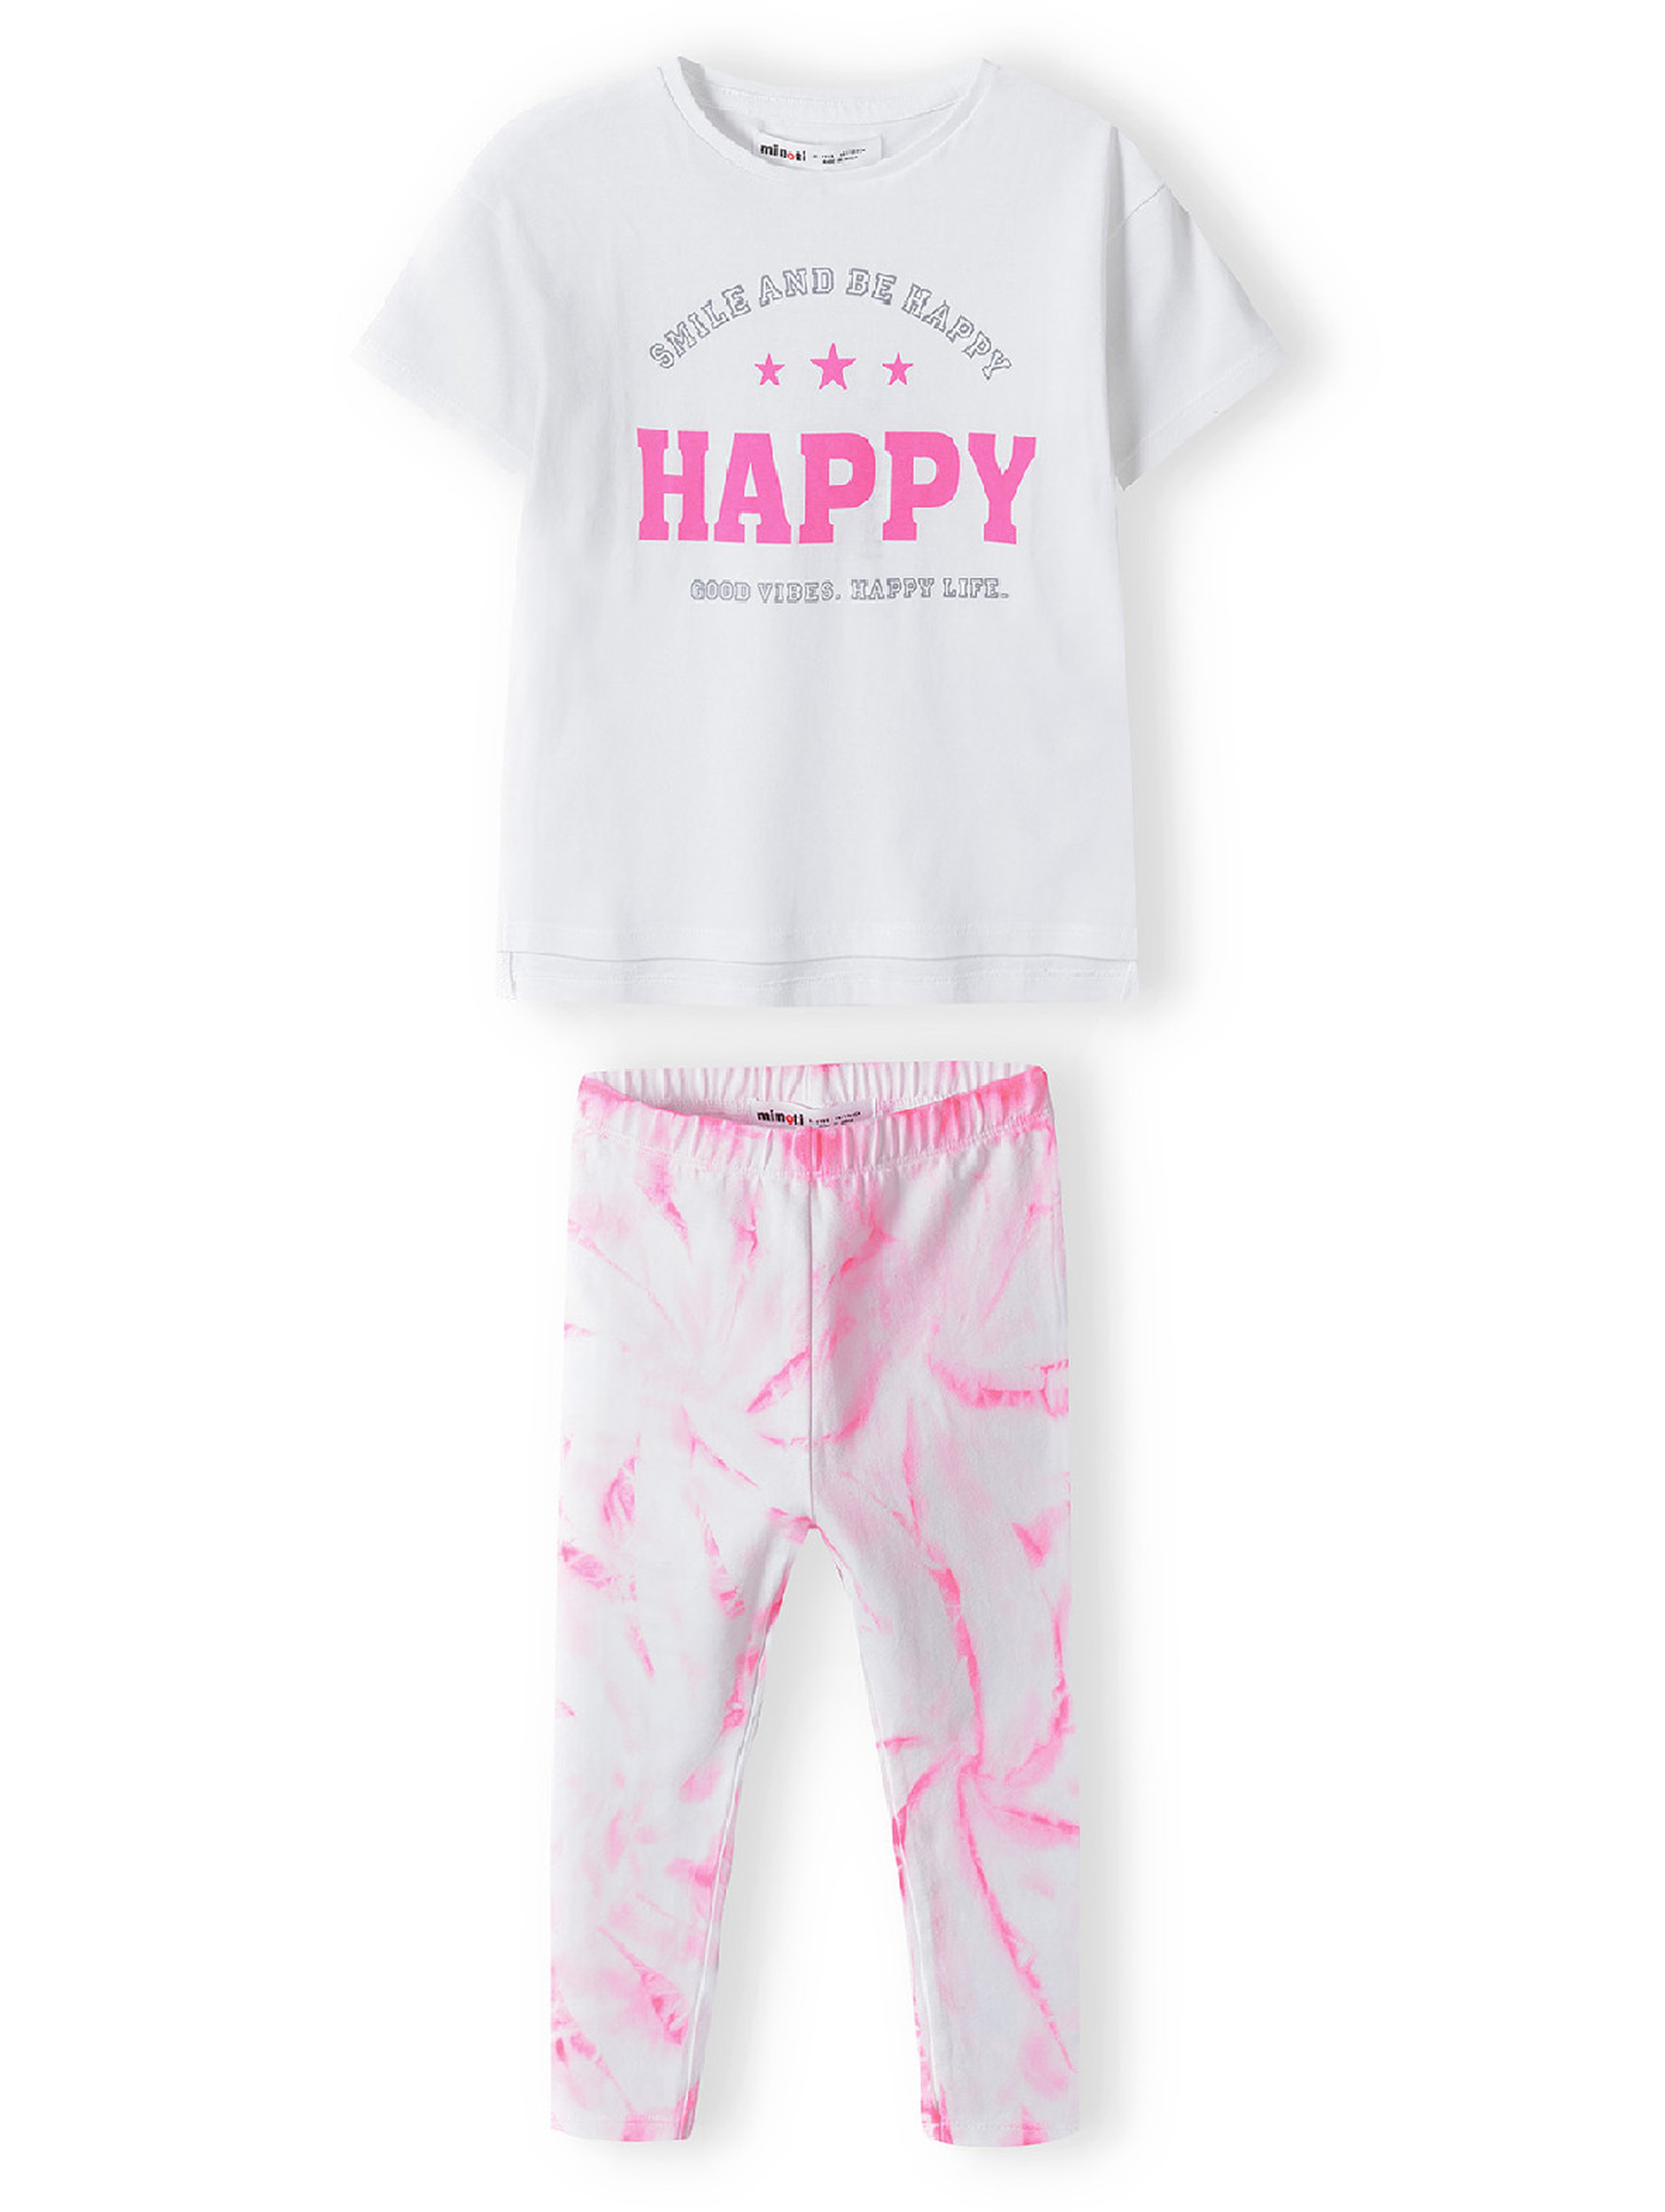 Komplet niemowlęcy - biały t-shirt + różowe legginsy